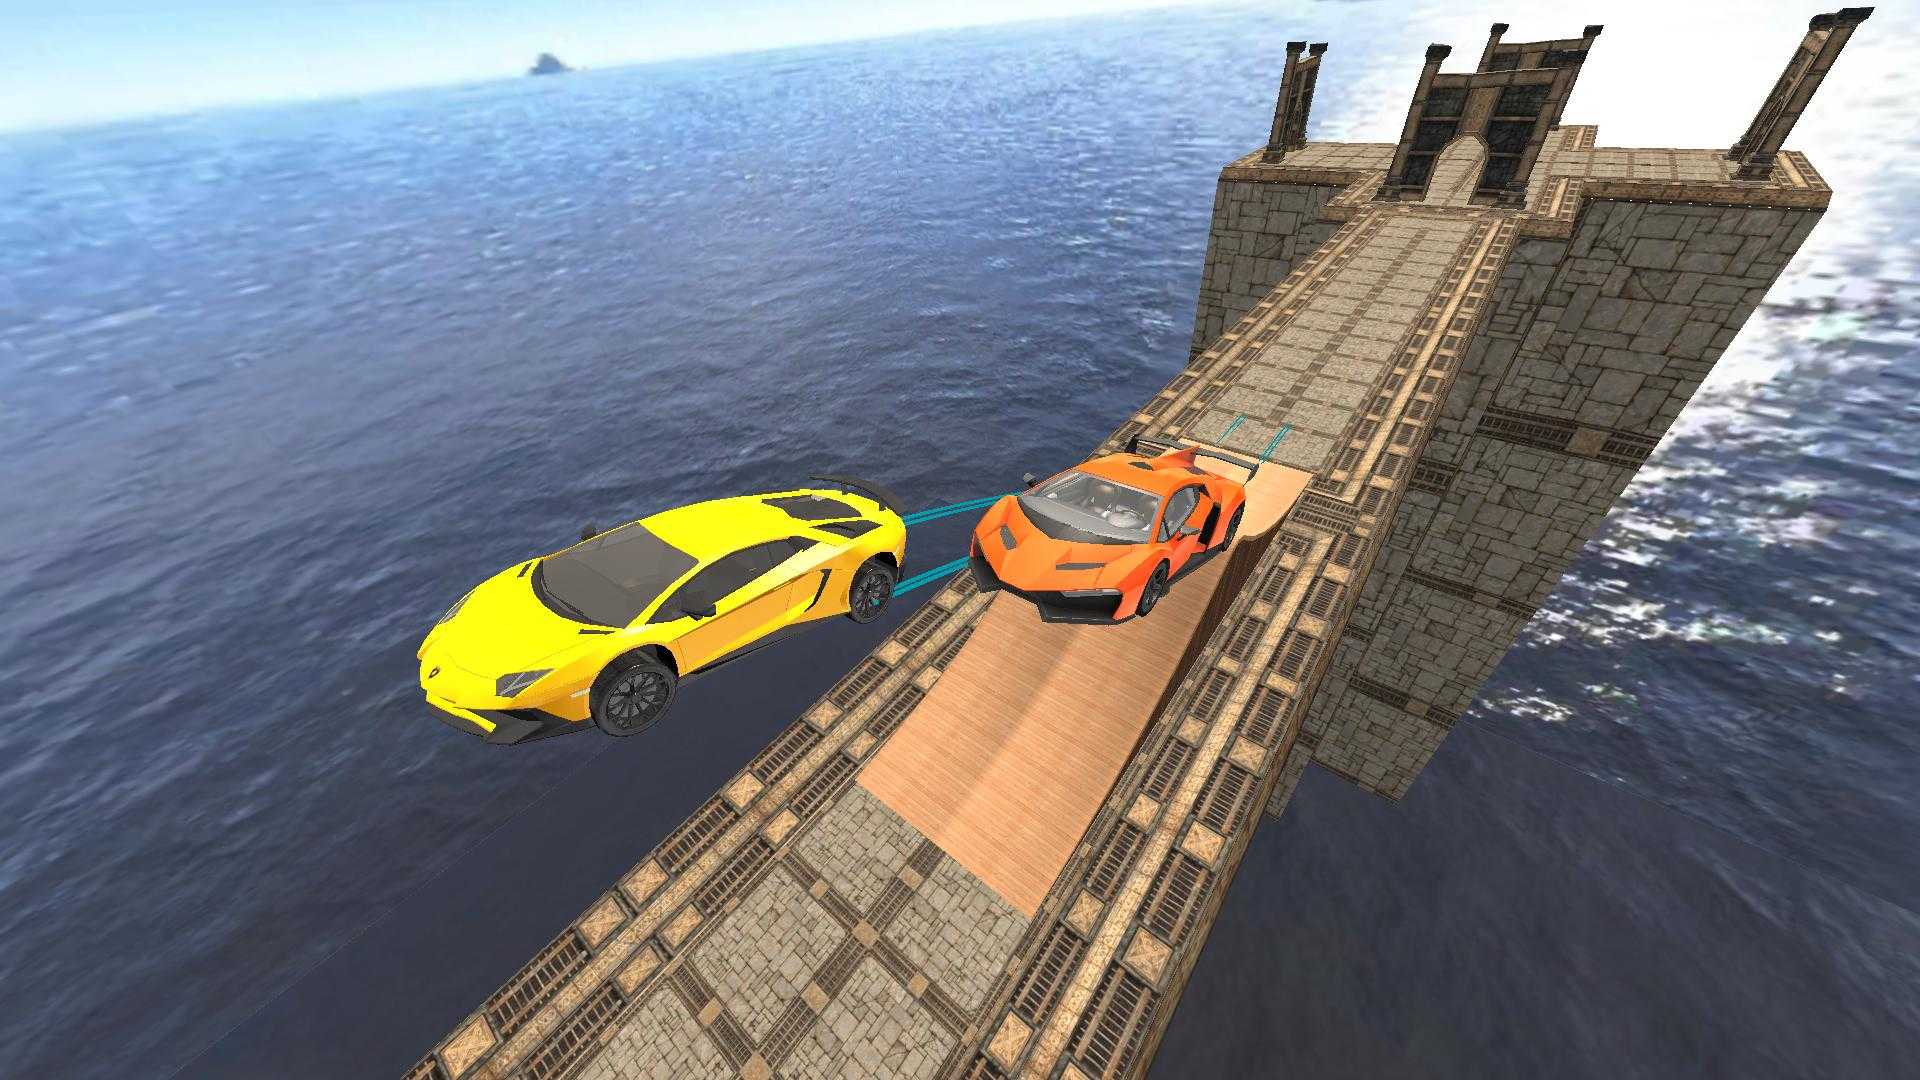 超级汽车特技3D